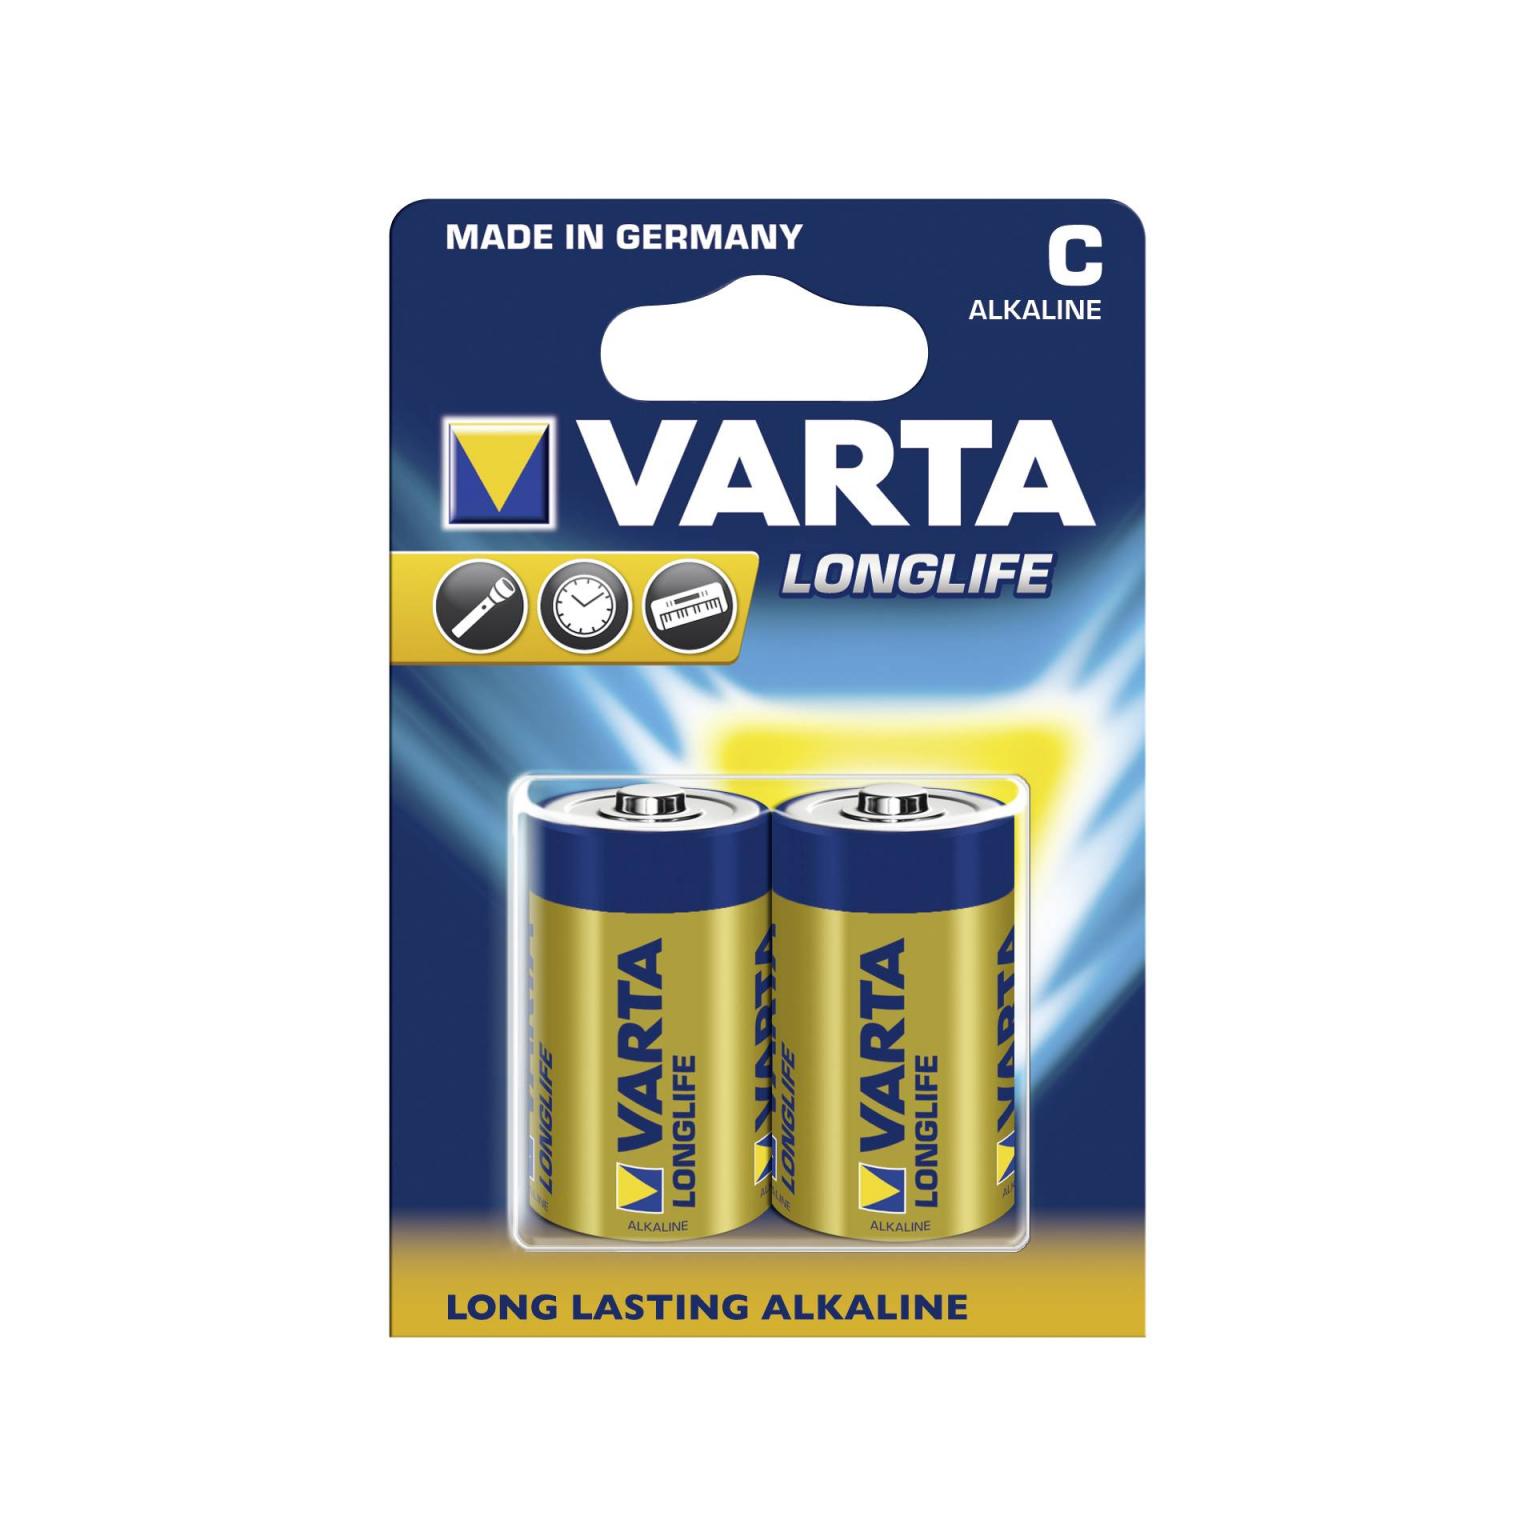 10x2 Varta Longlife Extra Baby C LR 14 VPE binnenverpakking - Varta